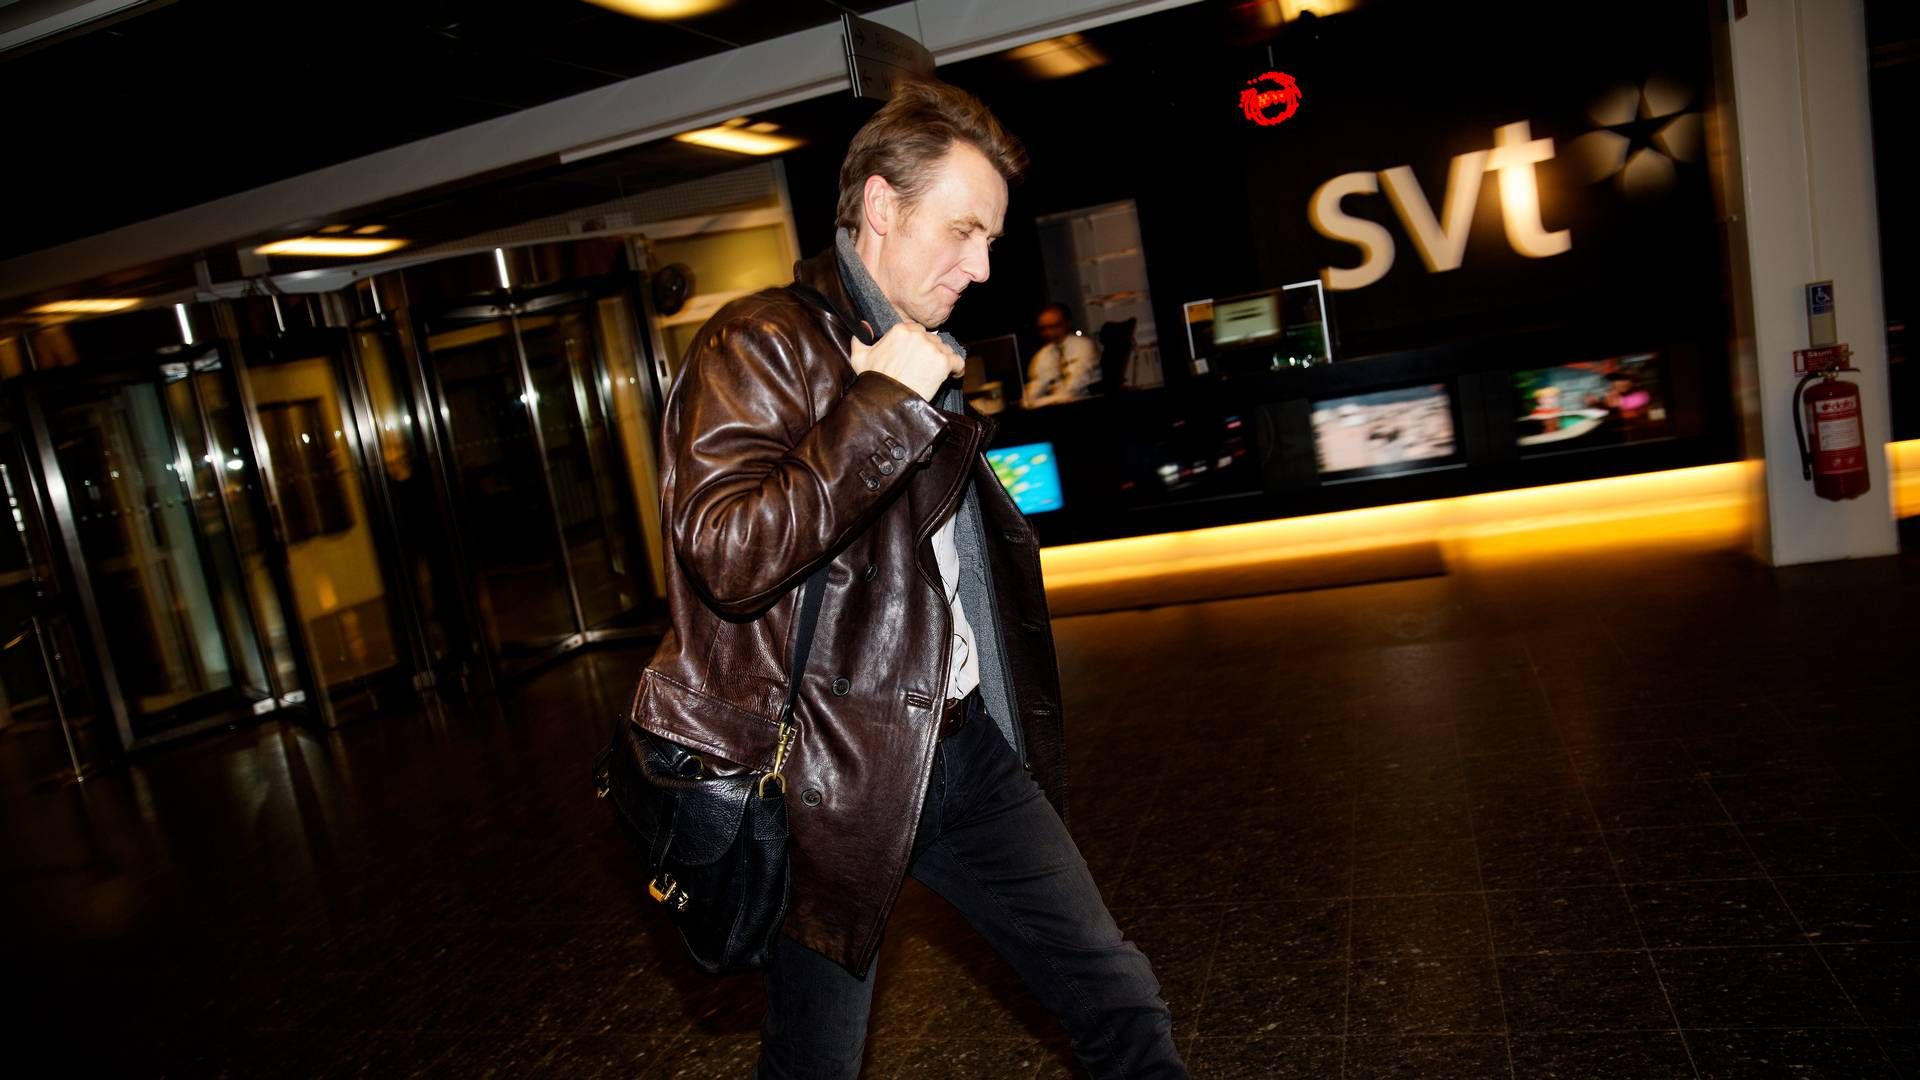 SVT skal spare 200 mio. svenske kr. Dette er et arkivbillede med værten på det populære norsk-svenske talkshow "Sakvlan", der blev filmet og produceret af SVT i flere sæsoner. | Foto: Jacob Ehrbahn